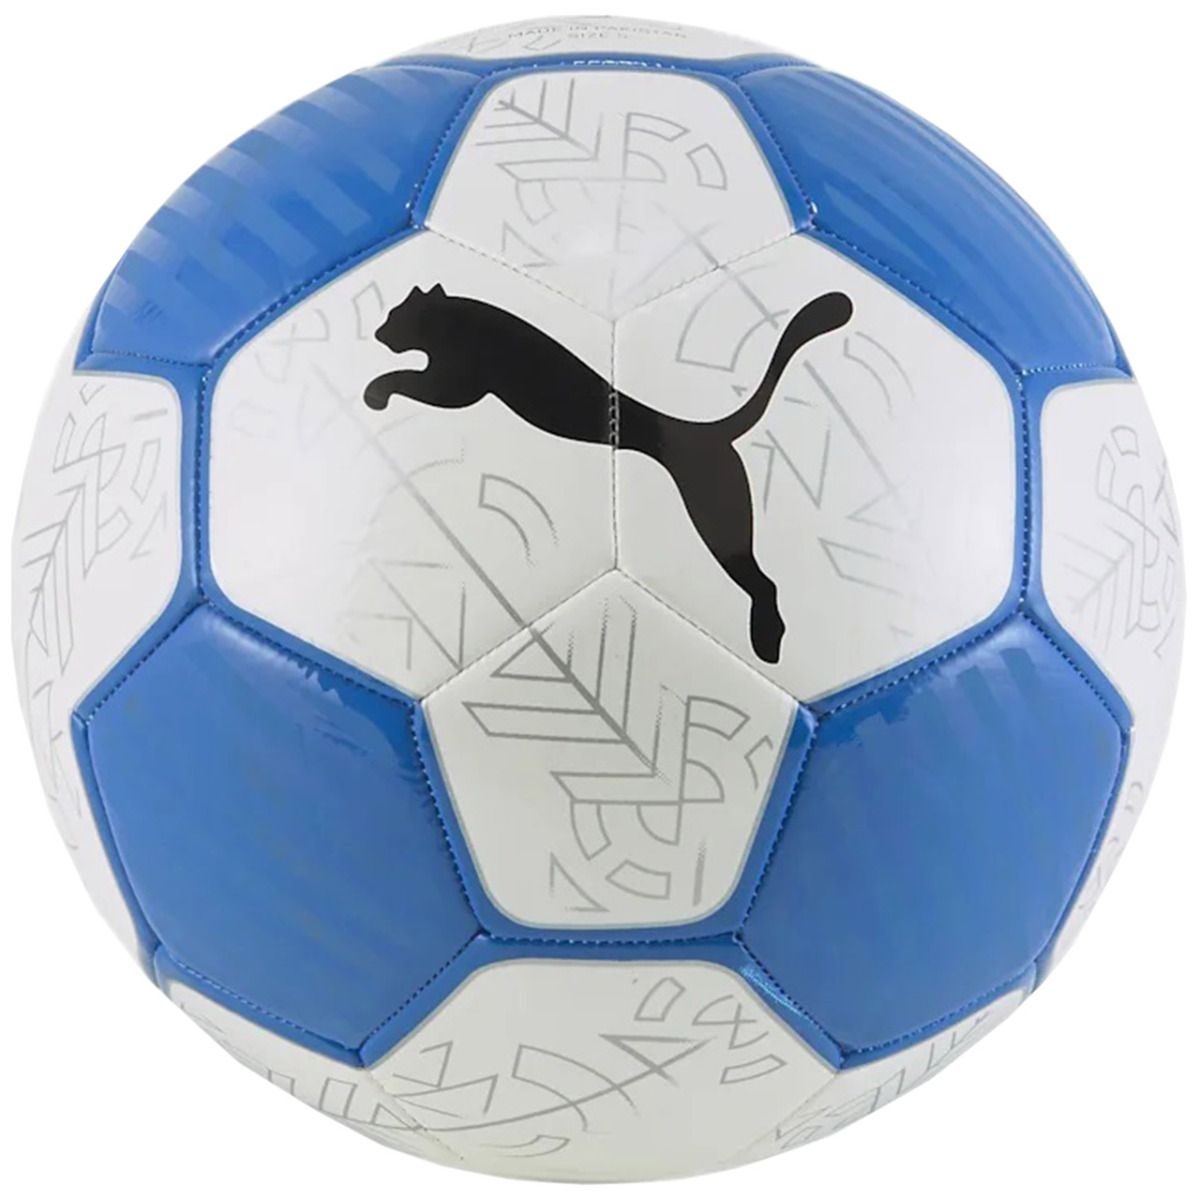 PUMA Fotbalový míč Prestige 83992 03